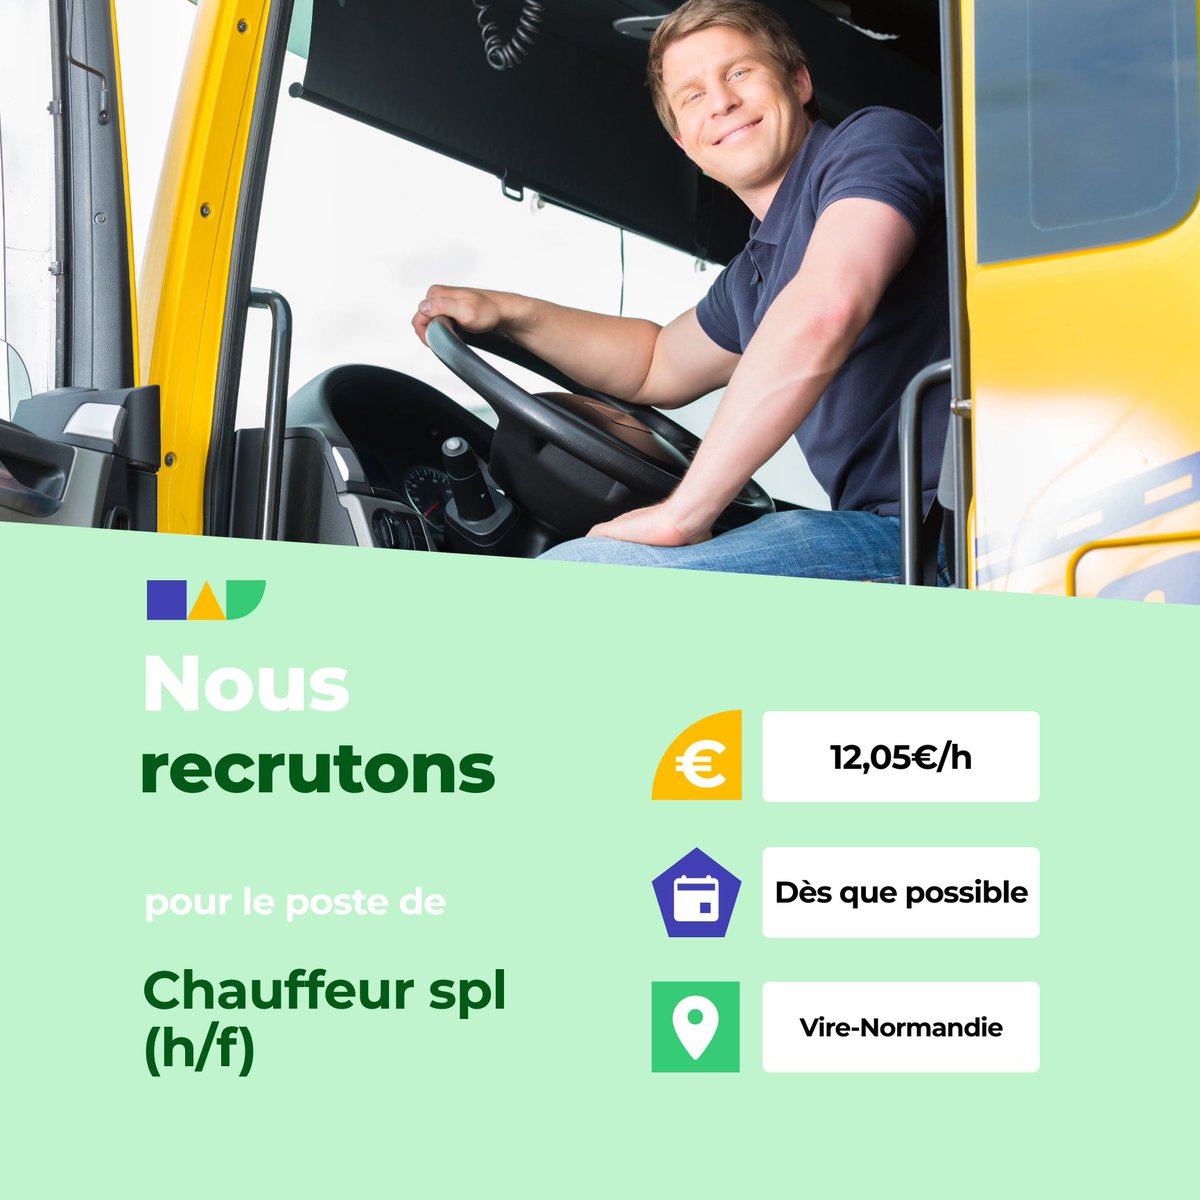 🛎️ Nouvelle offre d'emploi : Chauffeur spl (h/f) 🌎 Vire-Normandie (14500) 📅 Démarrage dans les 7 prochains jours 👉 Plus d'infos : jobs.iziwork.com/fr/offre-emplo… #recrutement #intérim #emploi #OffreEmploi #job #iziwork